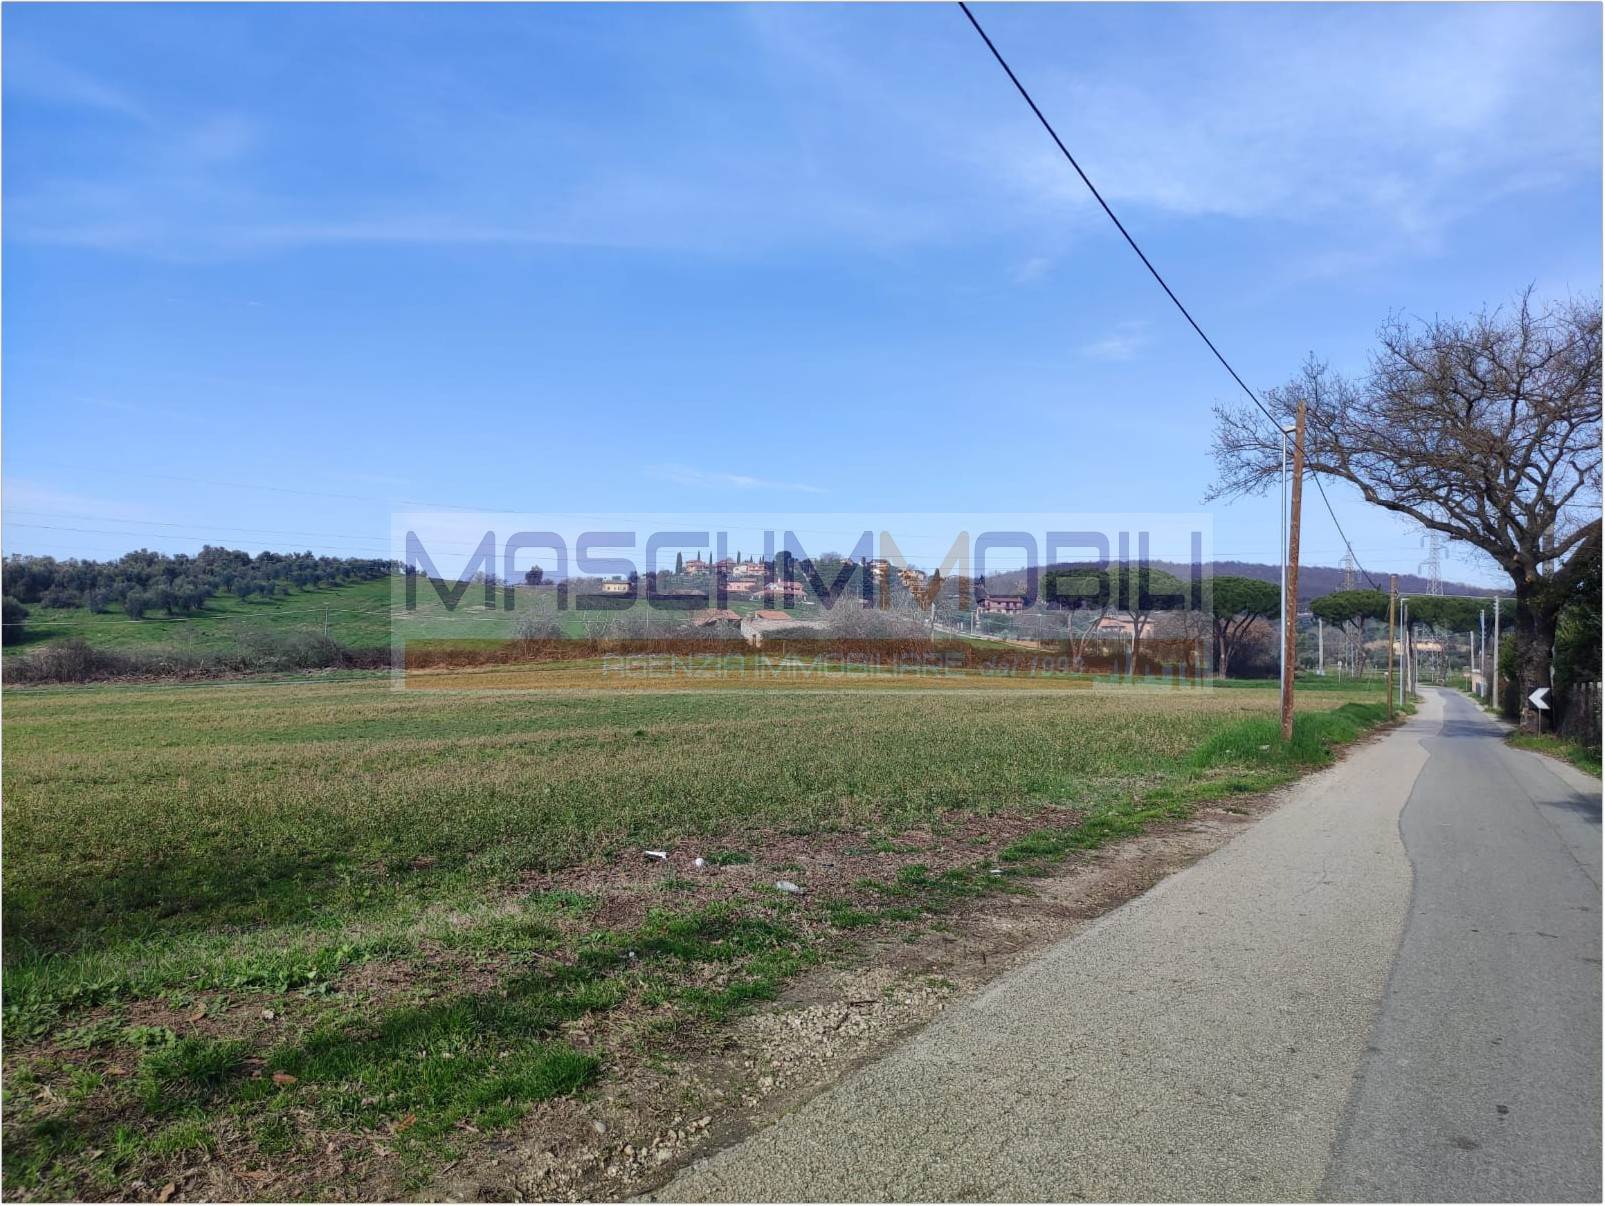 Terreno Agricolo in vendita a Fiano Romano, 9999 locali, prezzo € 50.000 | PortaleAgenzieImmobiliari.it